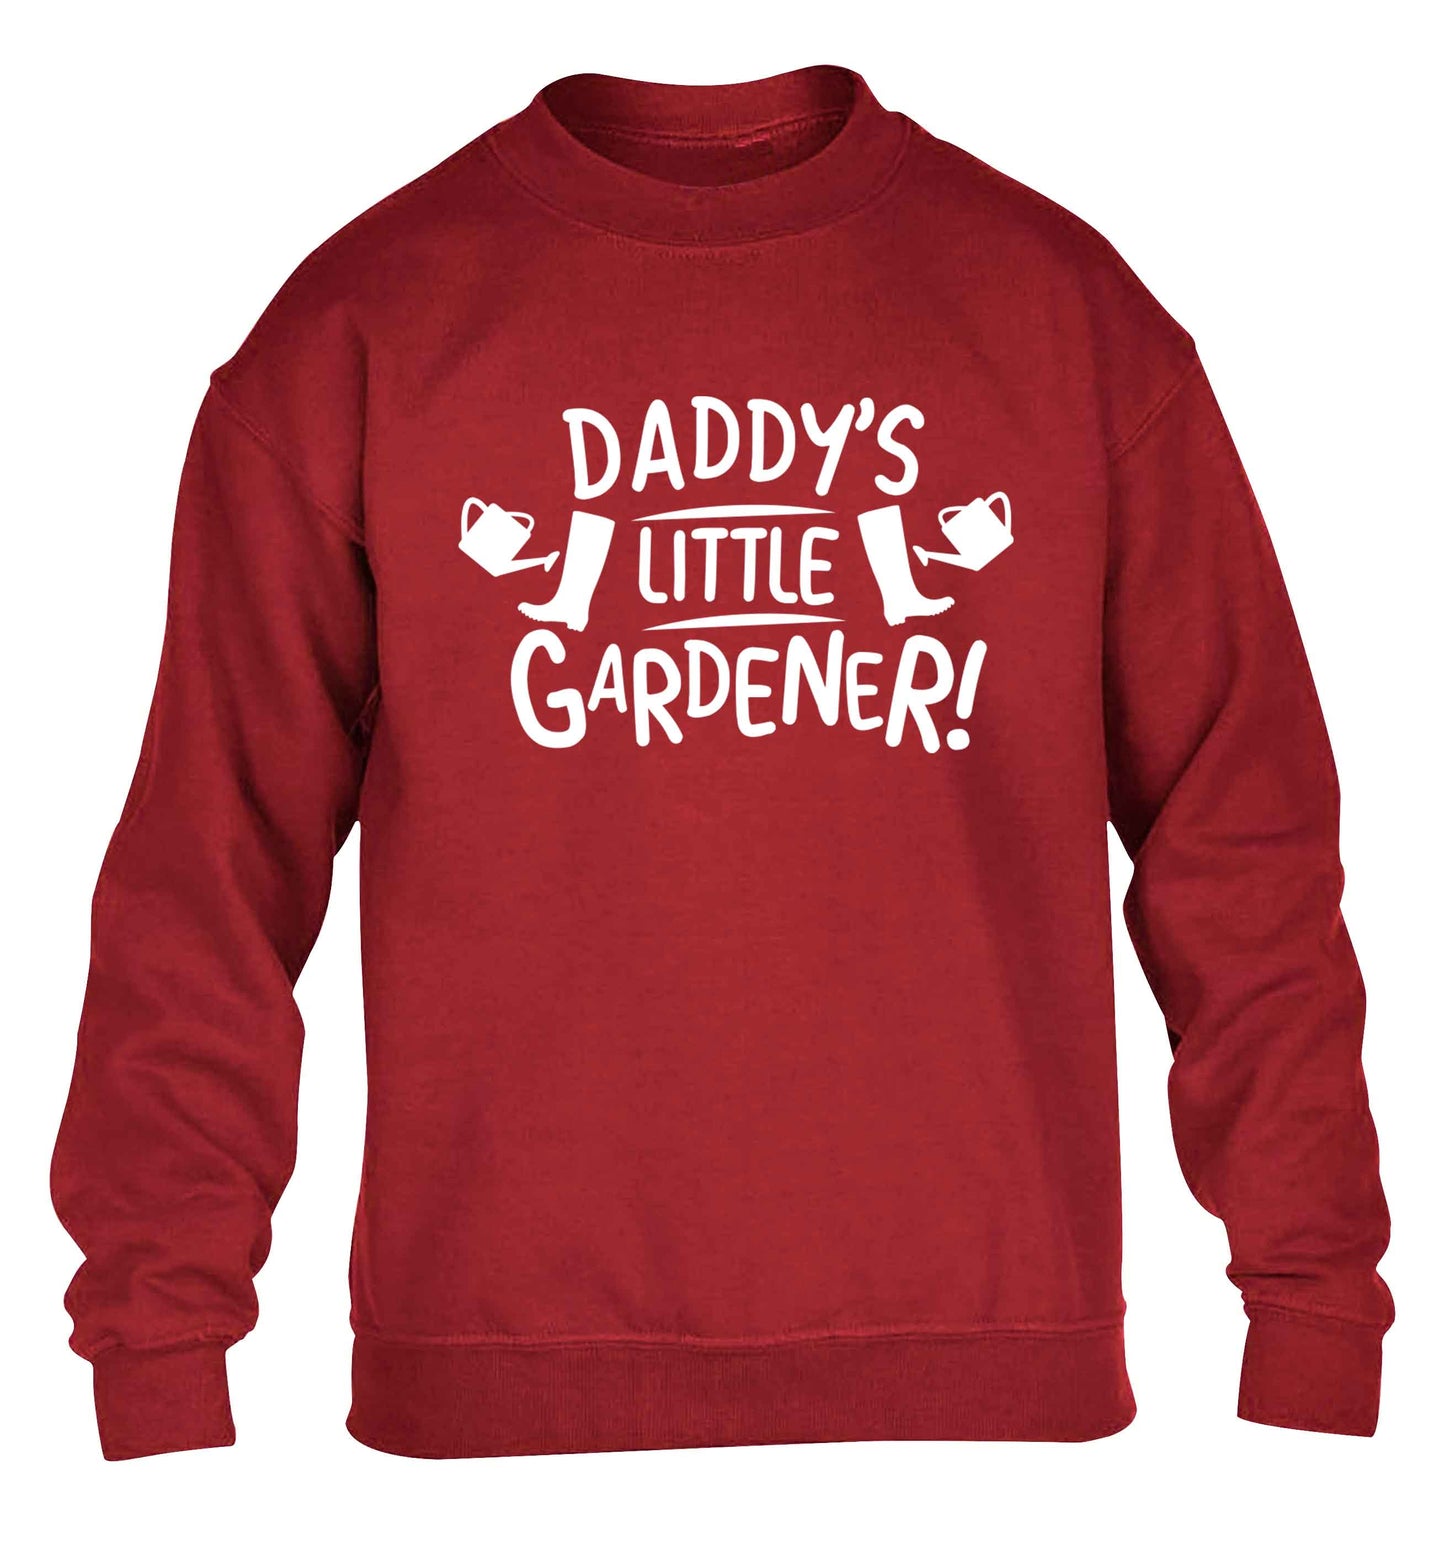 Daddy's little gardener children's grey sweater 12-13 Years